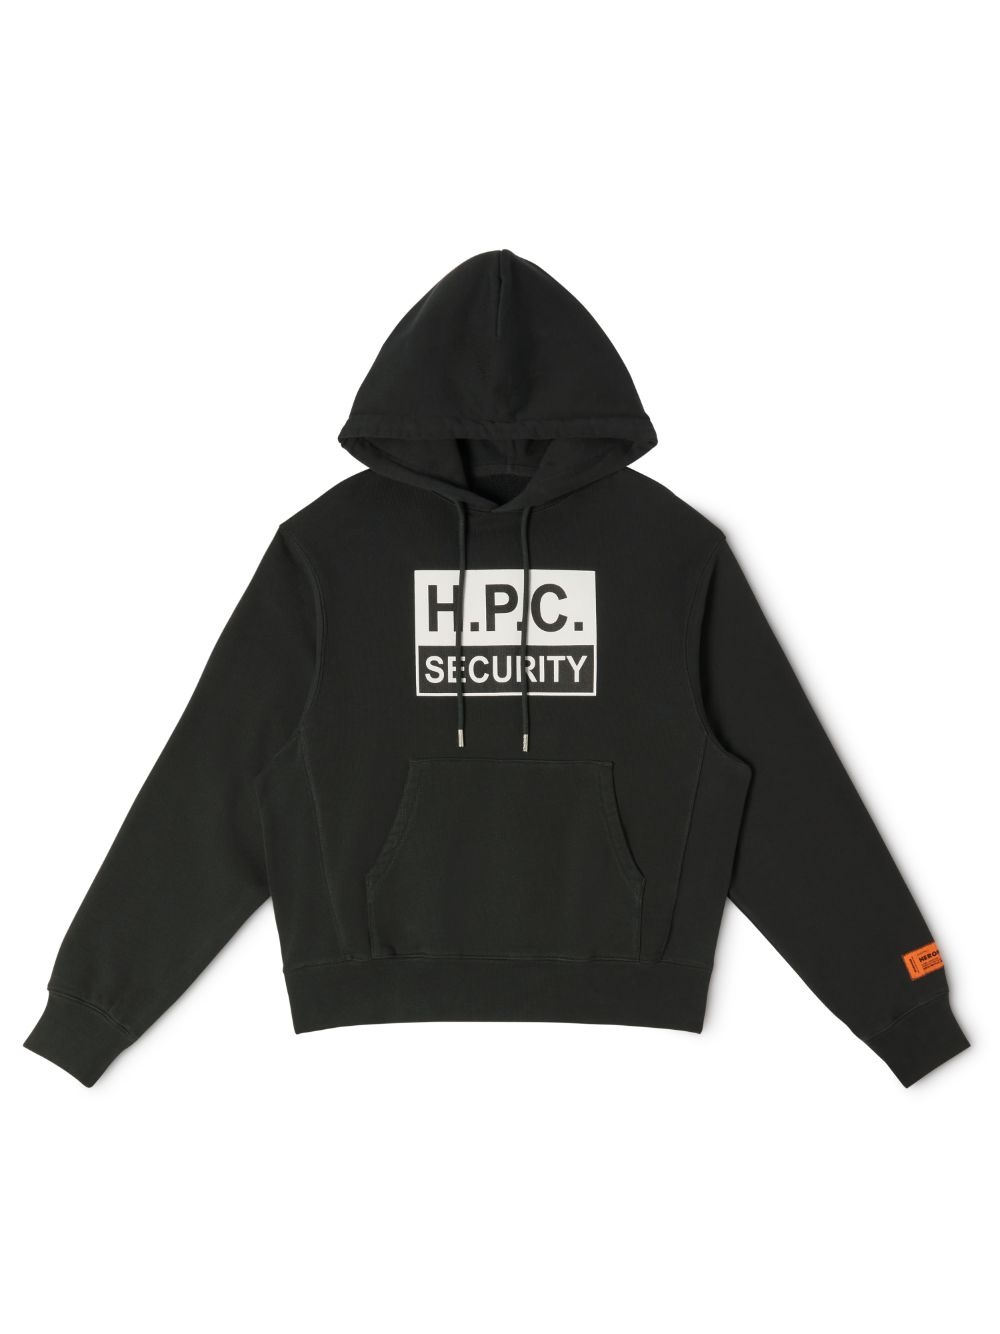 H.P.C Security Hoodie - 1